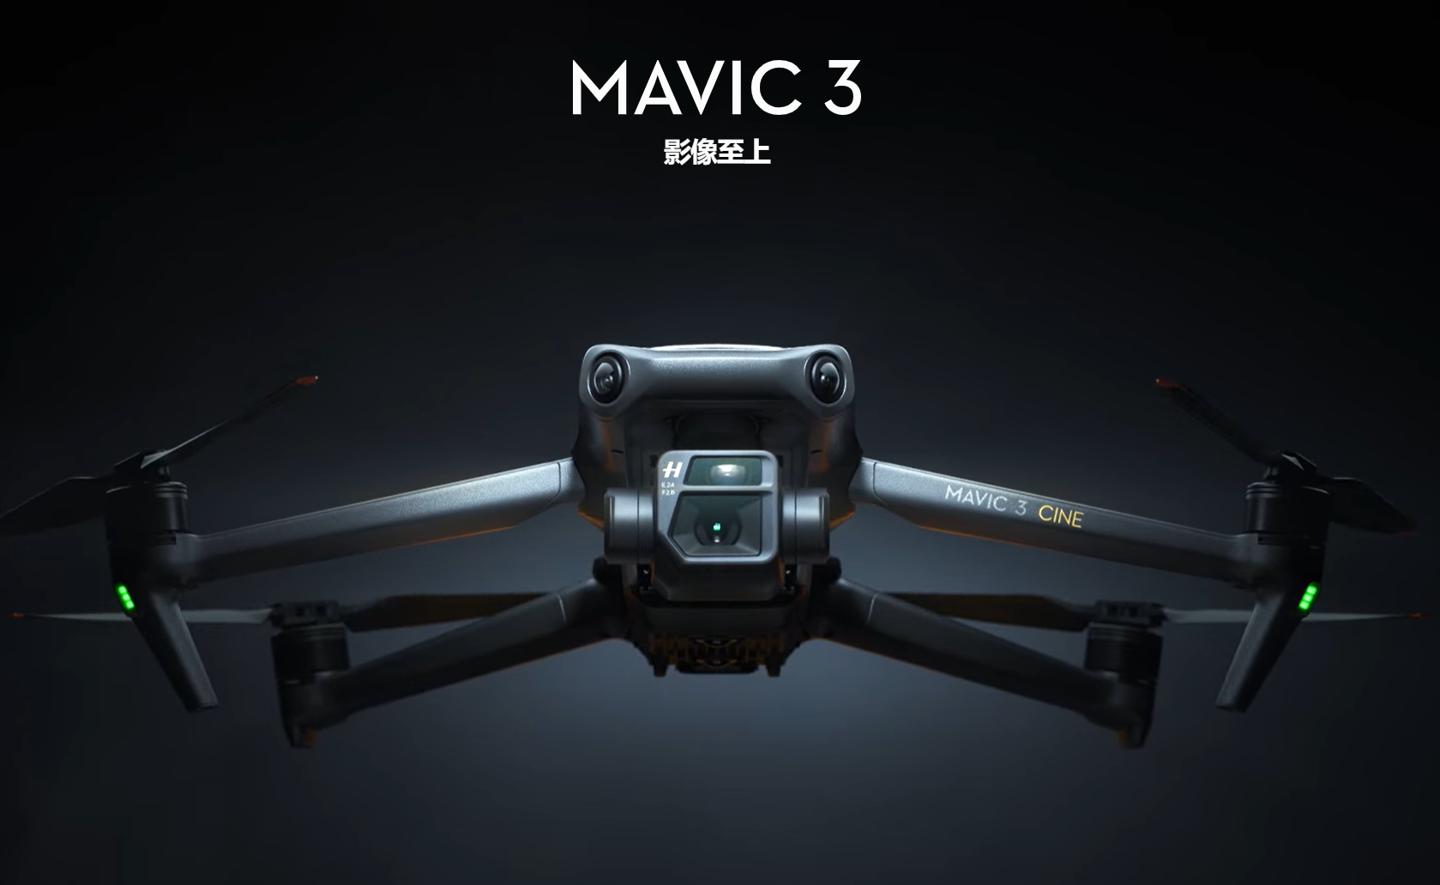 大疆发布 DJI Mavic 3 消费级旗舰无人机 双摄影像系统 售价13888元起